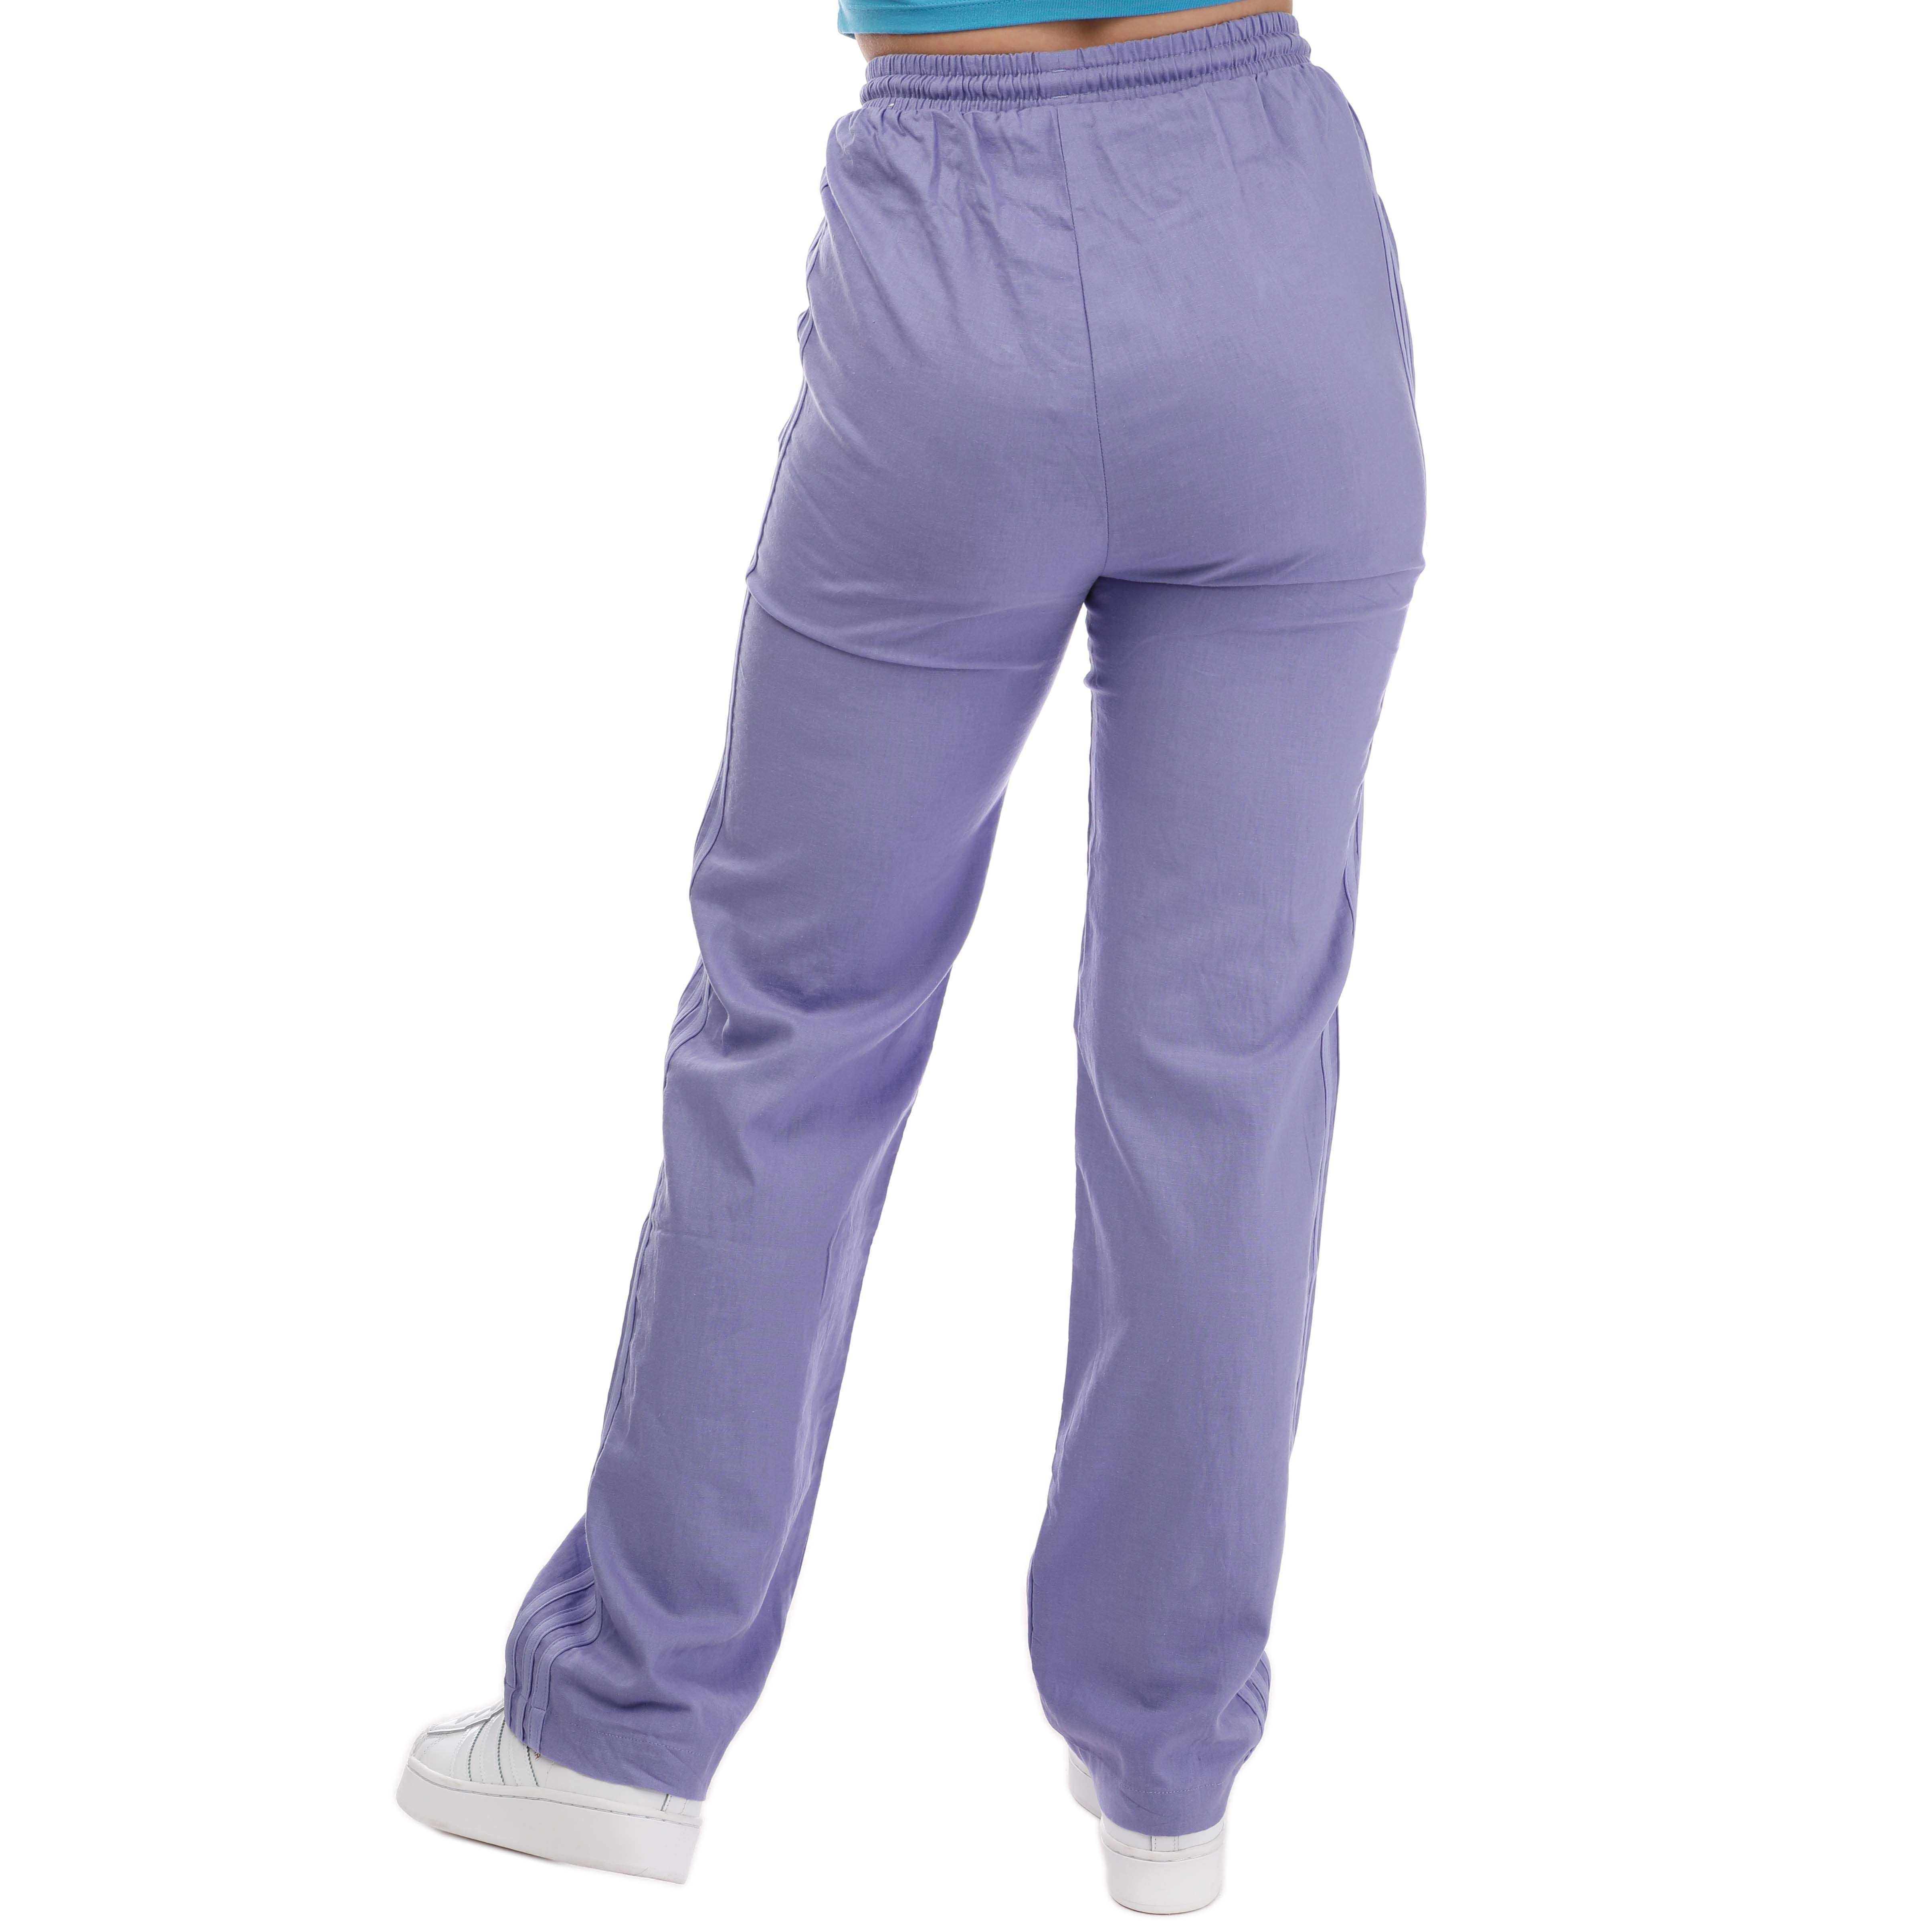 Adidas Purple Track Pants